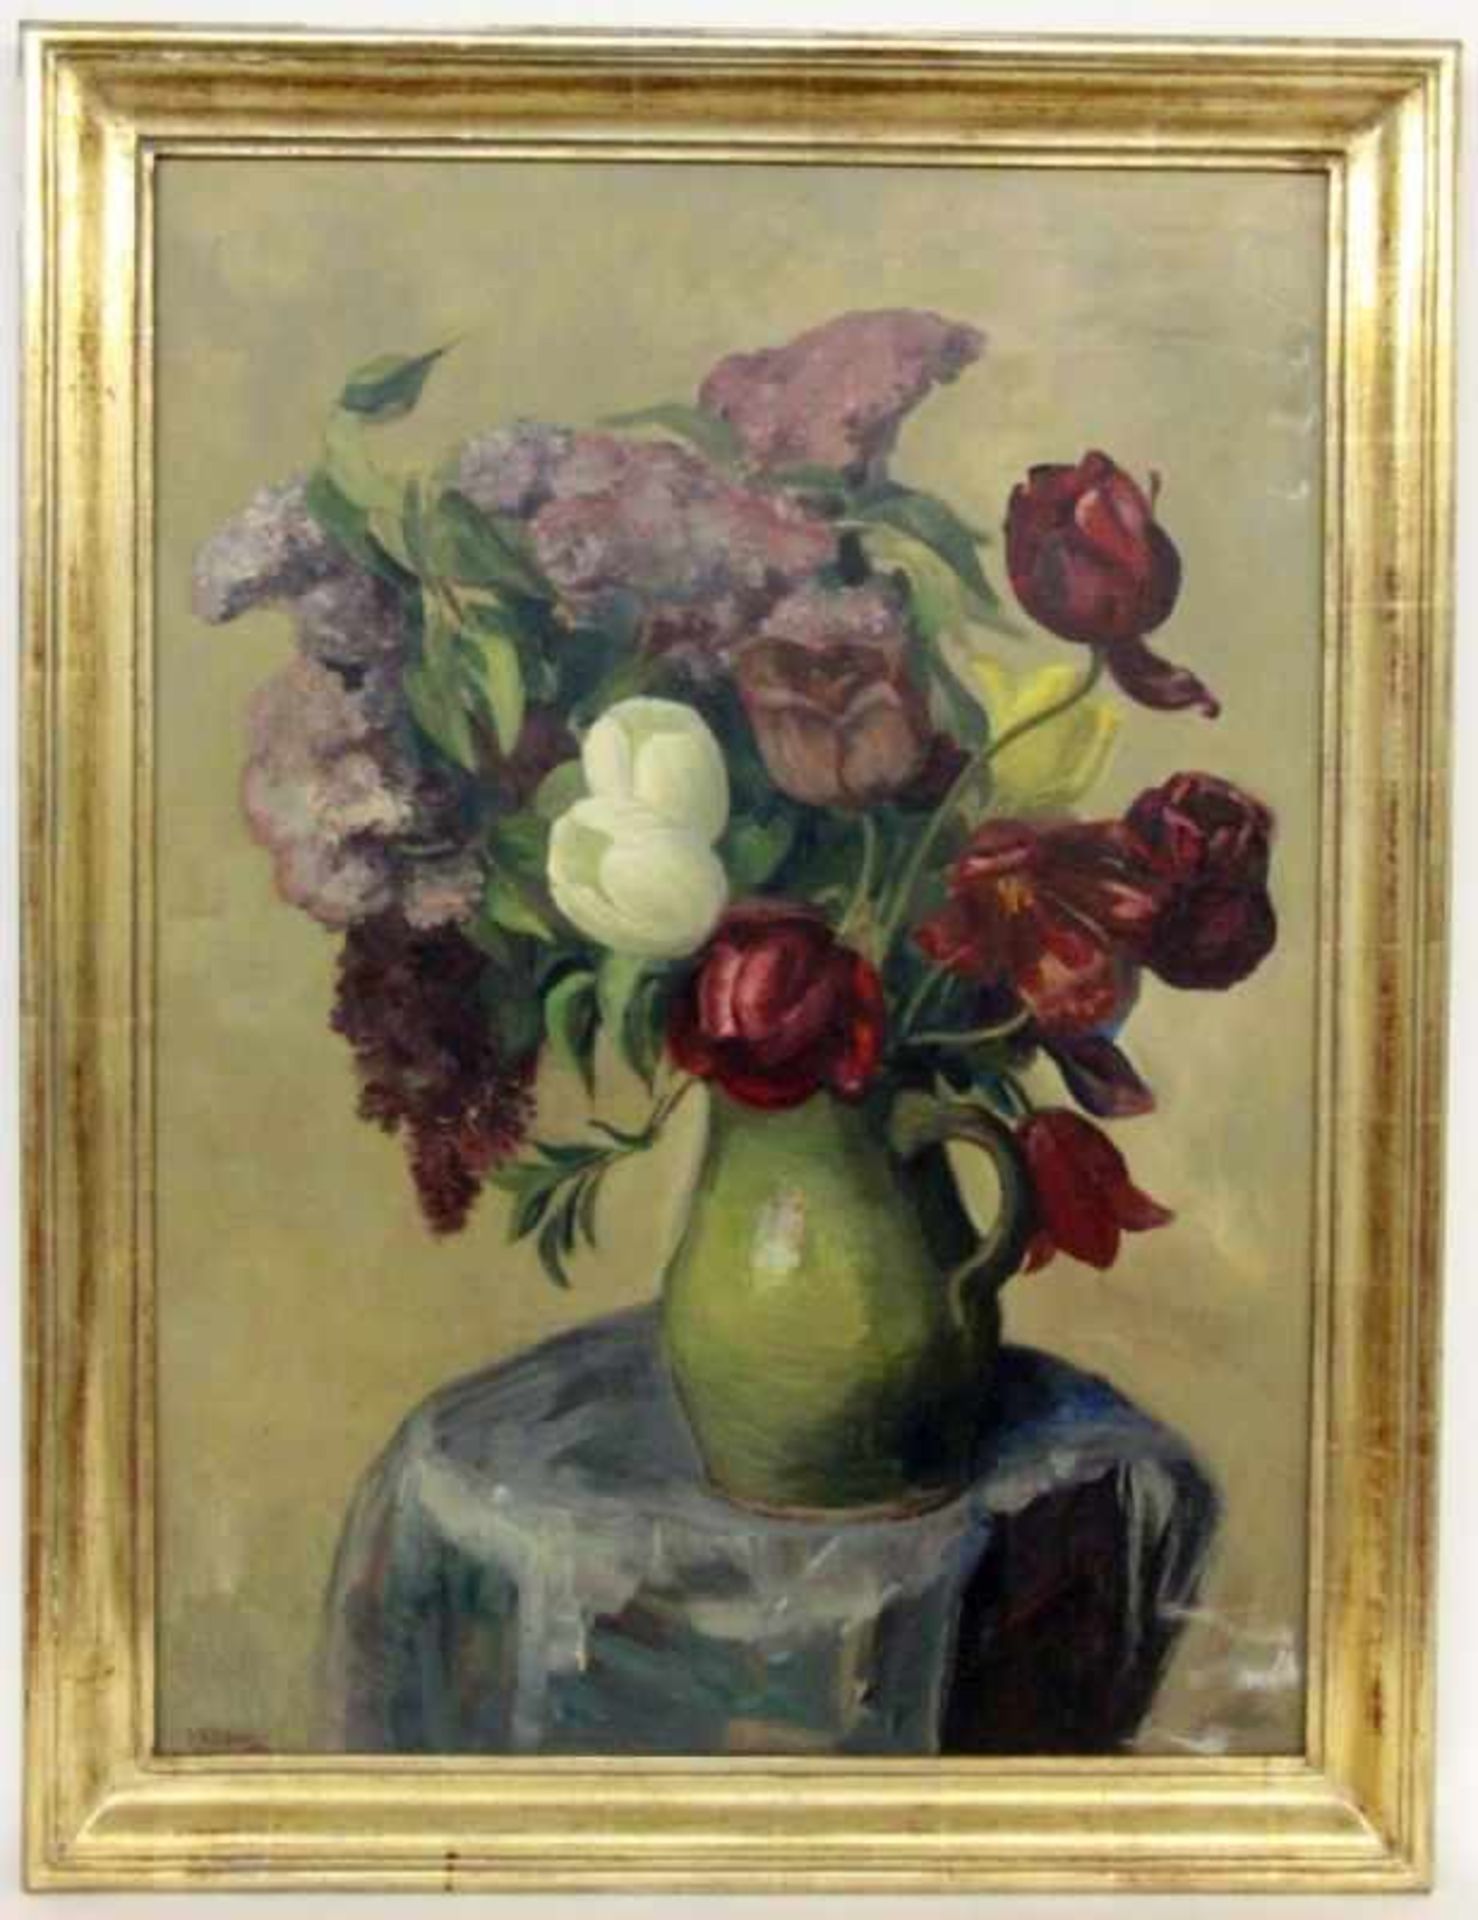 KÄLBERER, PAUL Stuttgart 1896 - 1974 Glatt Flowers in the Vase. Oil on canvas, signed anddated: